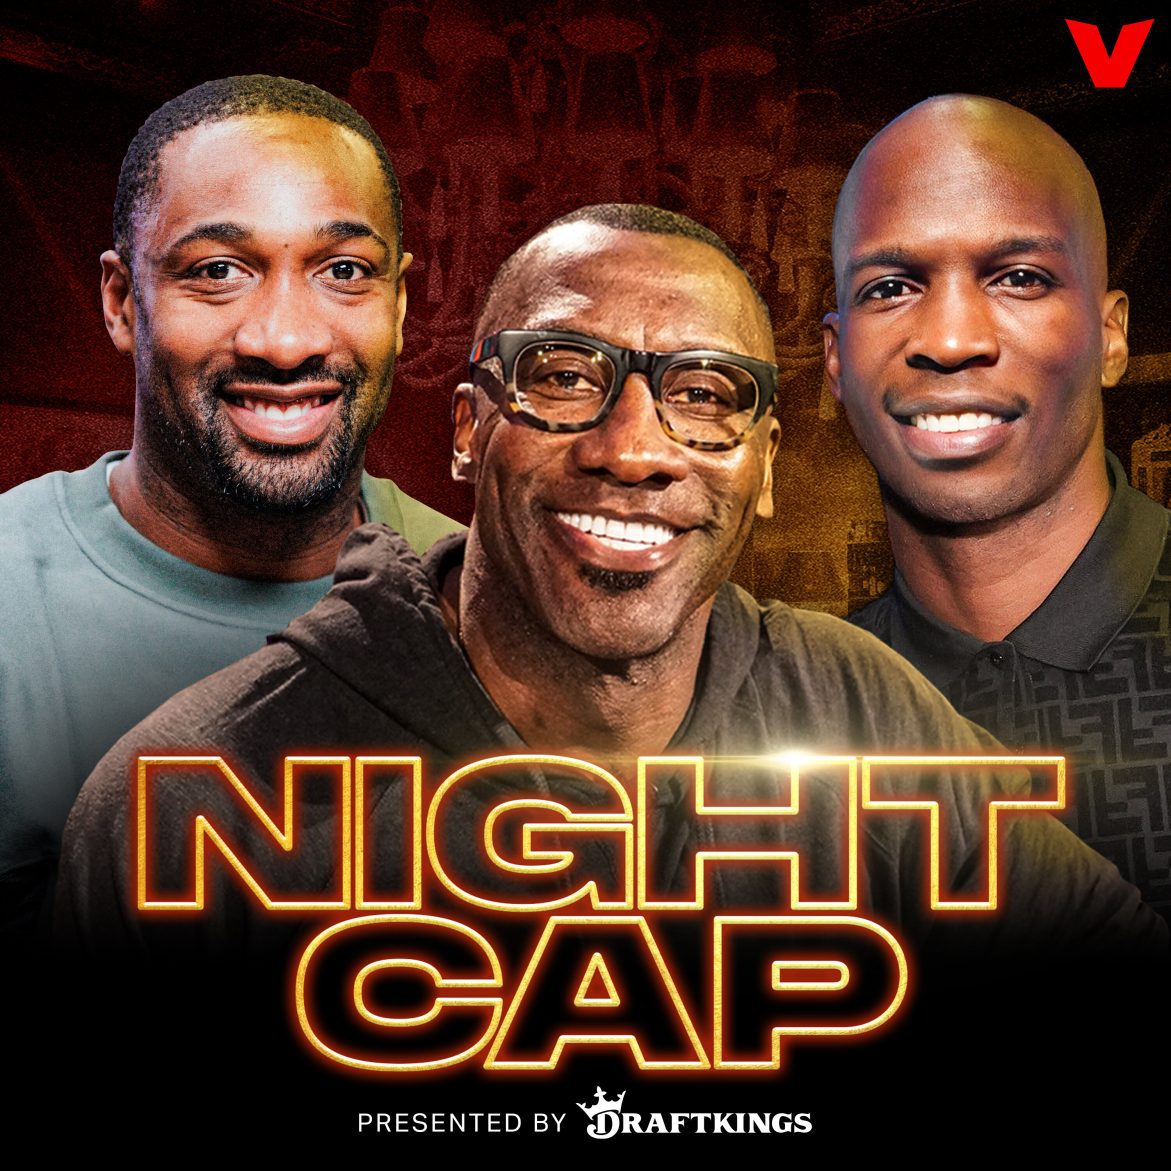 Black Podcasting - Nightcap - Hour 2: Larsa Pippen & Marcus Jordan breakout, Sex in Olympic Villages, Ocho's trivia revenge